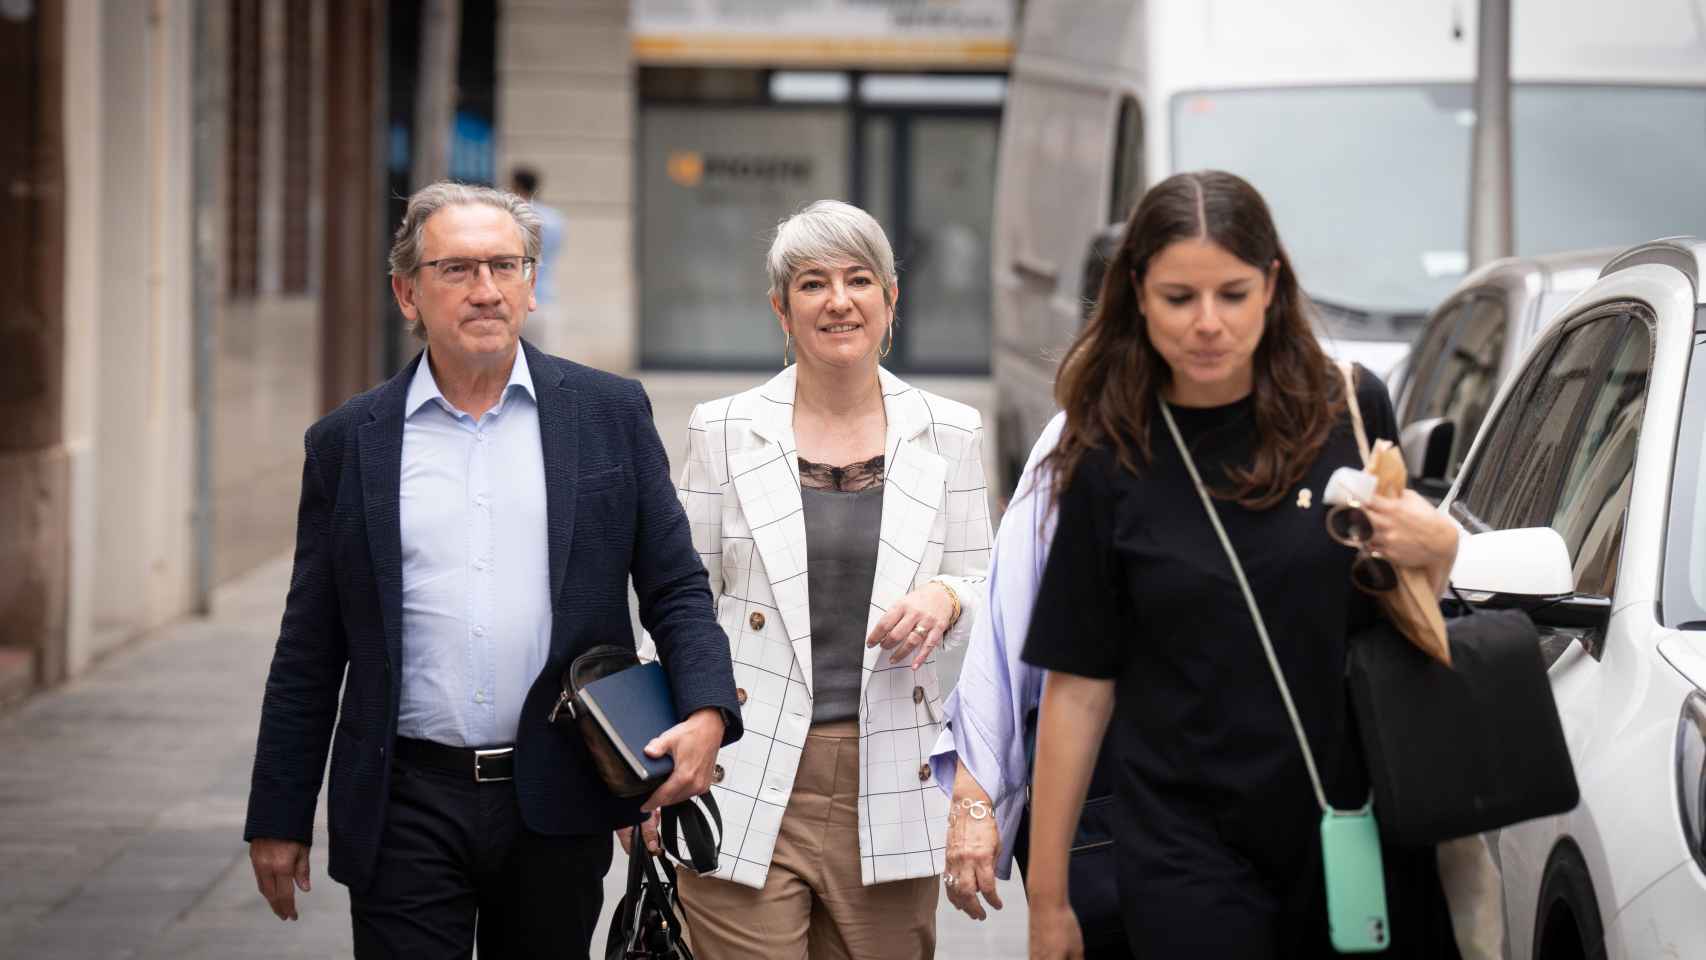 El exconseller de Economía, Jaume Giró, la exconsellera de Justicia, Lourdes Ciuró, y la portavoz de Junts en el Parlament, Mònica Sales, frente a la sede de Junts en Barcelona